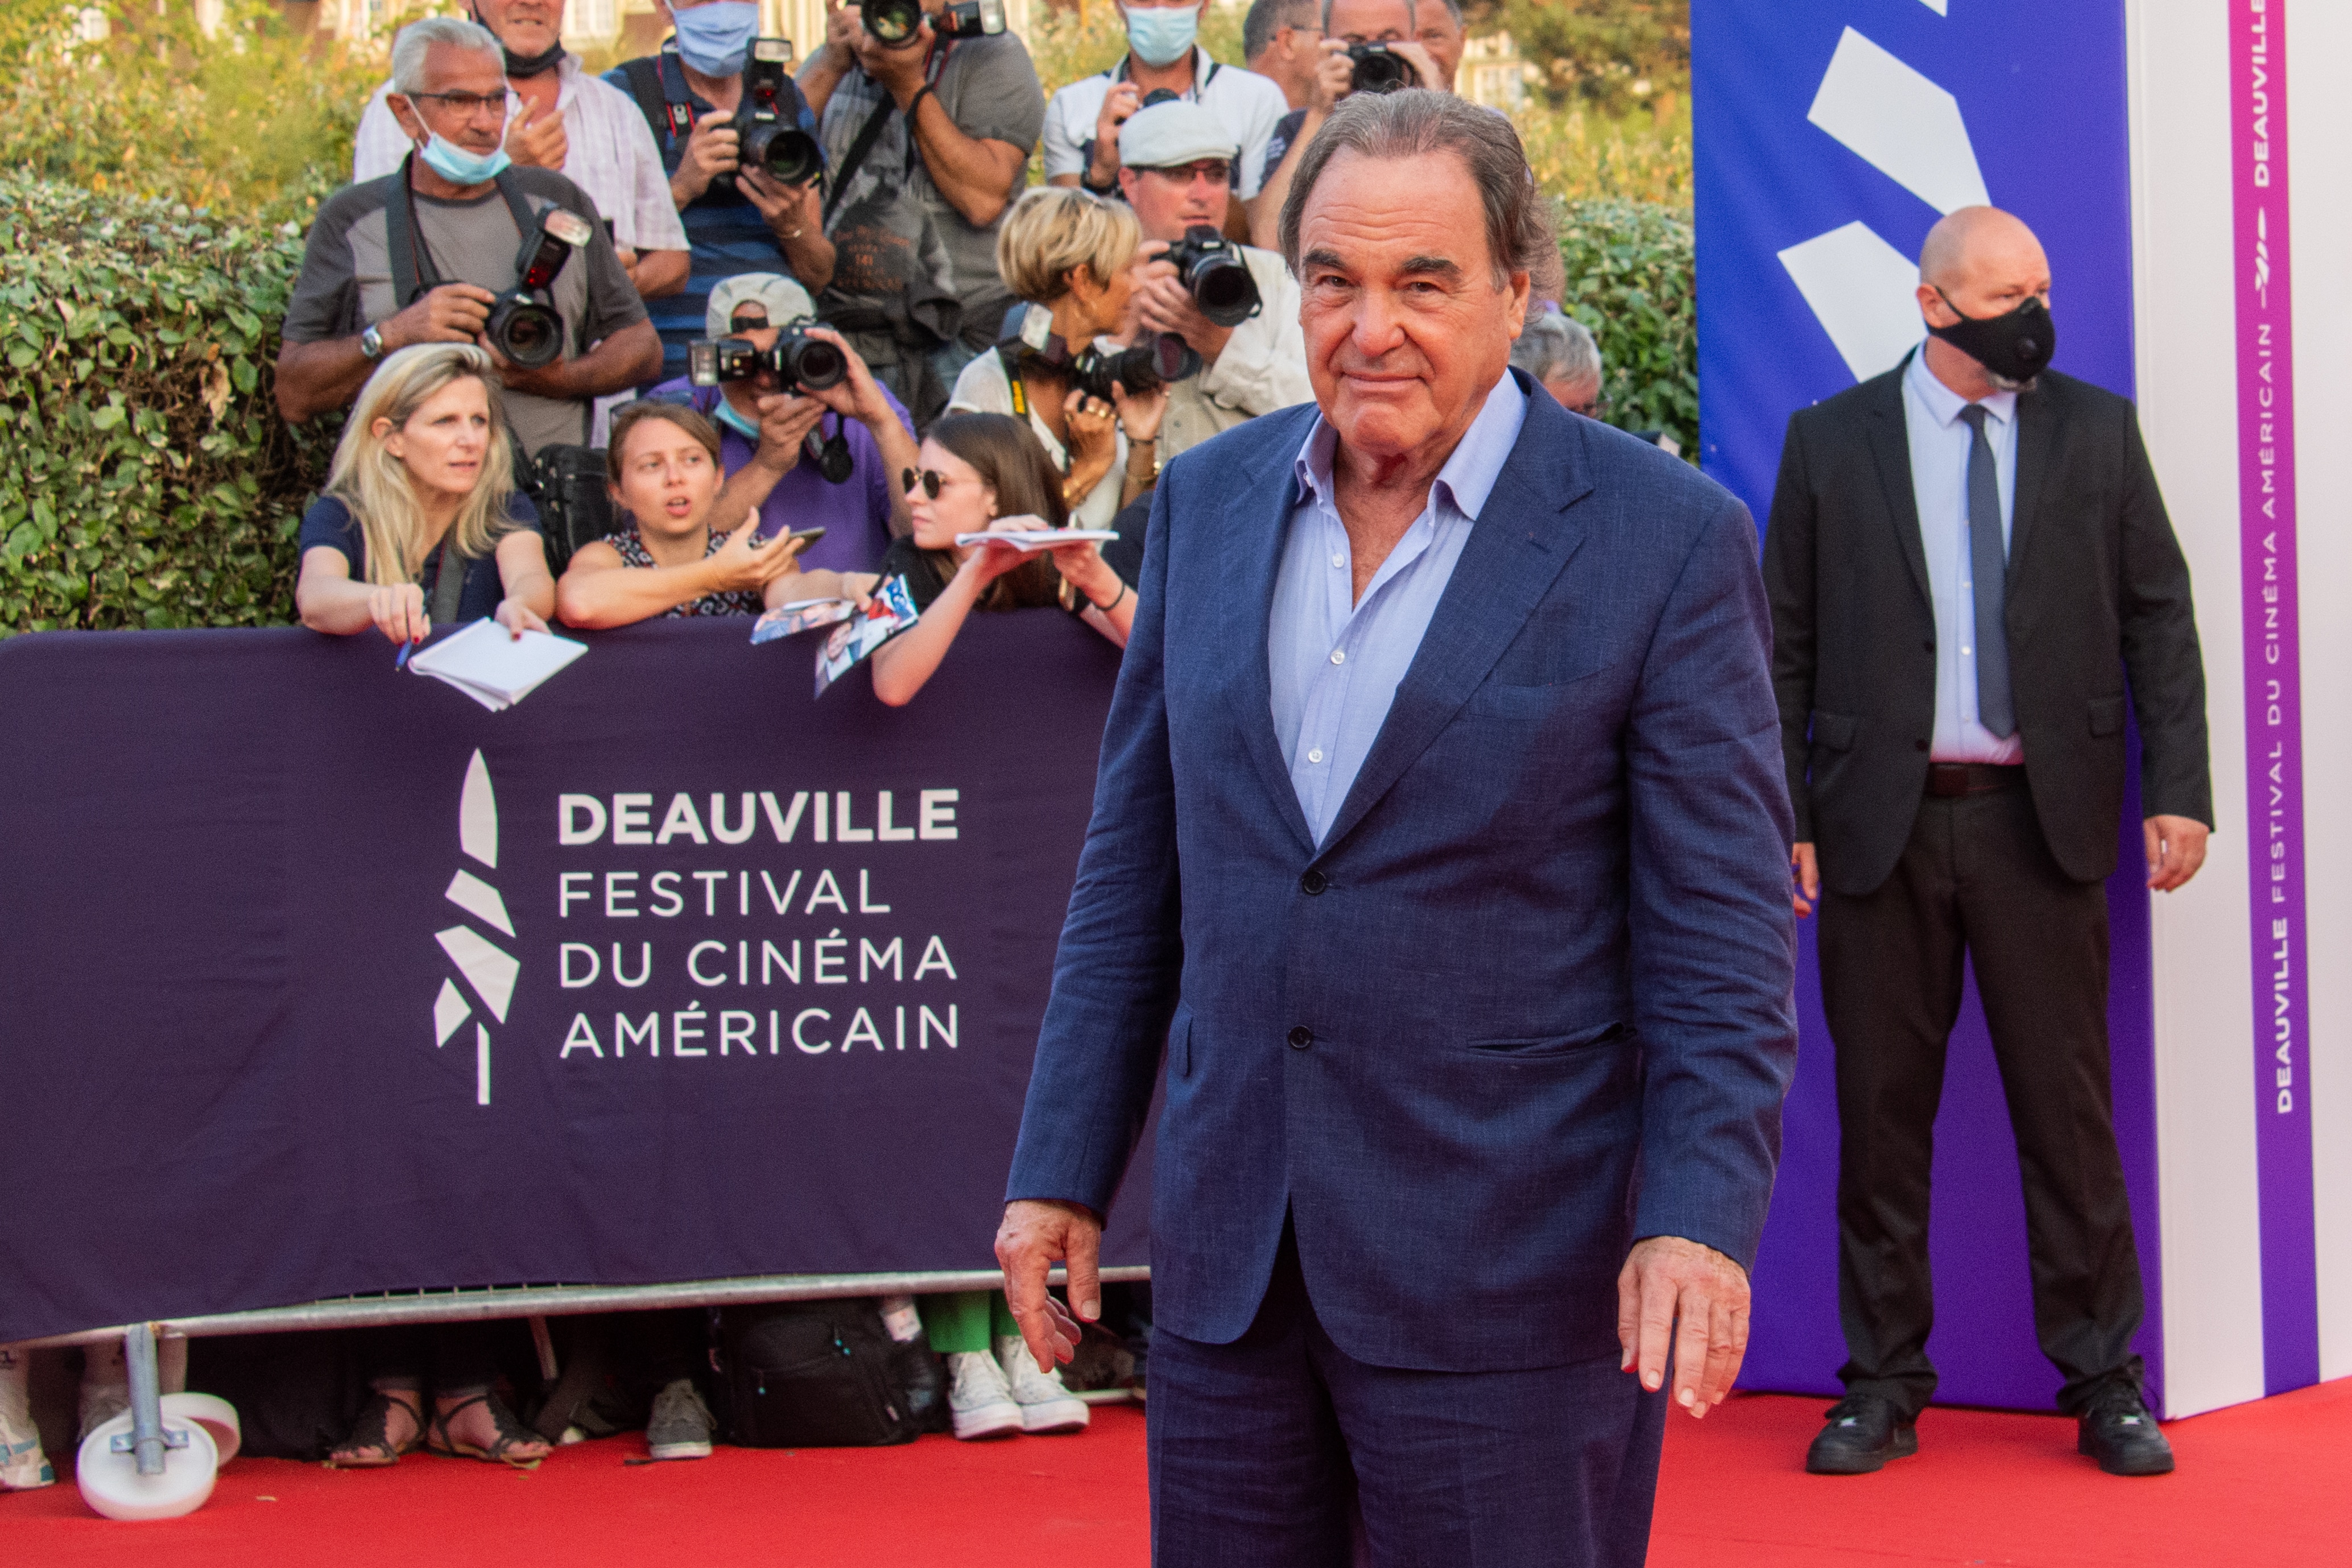 Stone all'American Film Festival di Deauville nel 2021